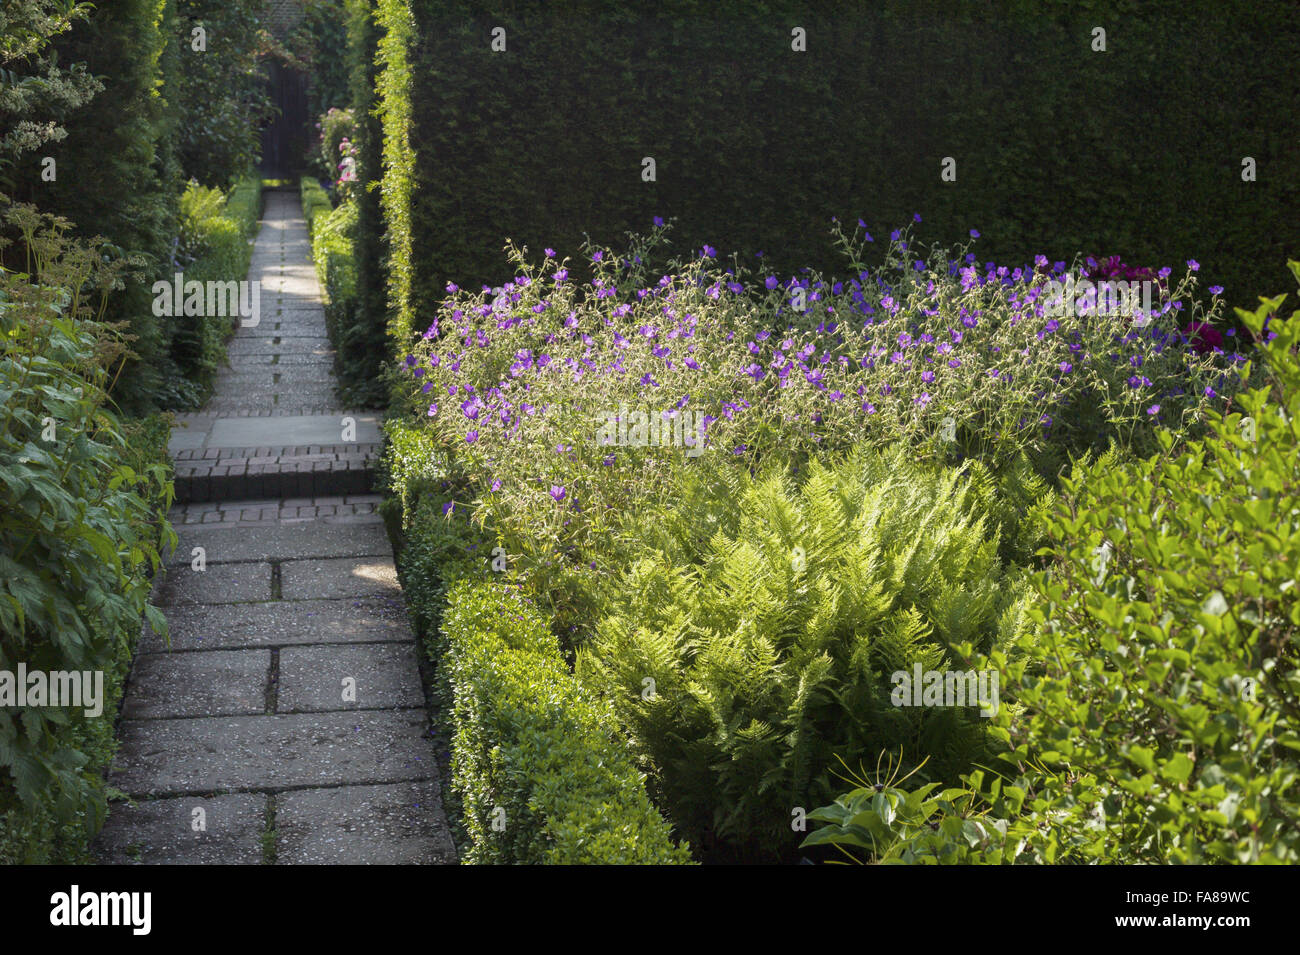 Ein Weg durch die Gärten im Juli auf Sissinghurst Castle, Kent. Sissinghurst erlangte internationale Bekanntheit in den 1930er Jahren, Vita Sackville-West und Harold Nicolson dort einen Garten erstellt. Stockfoto